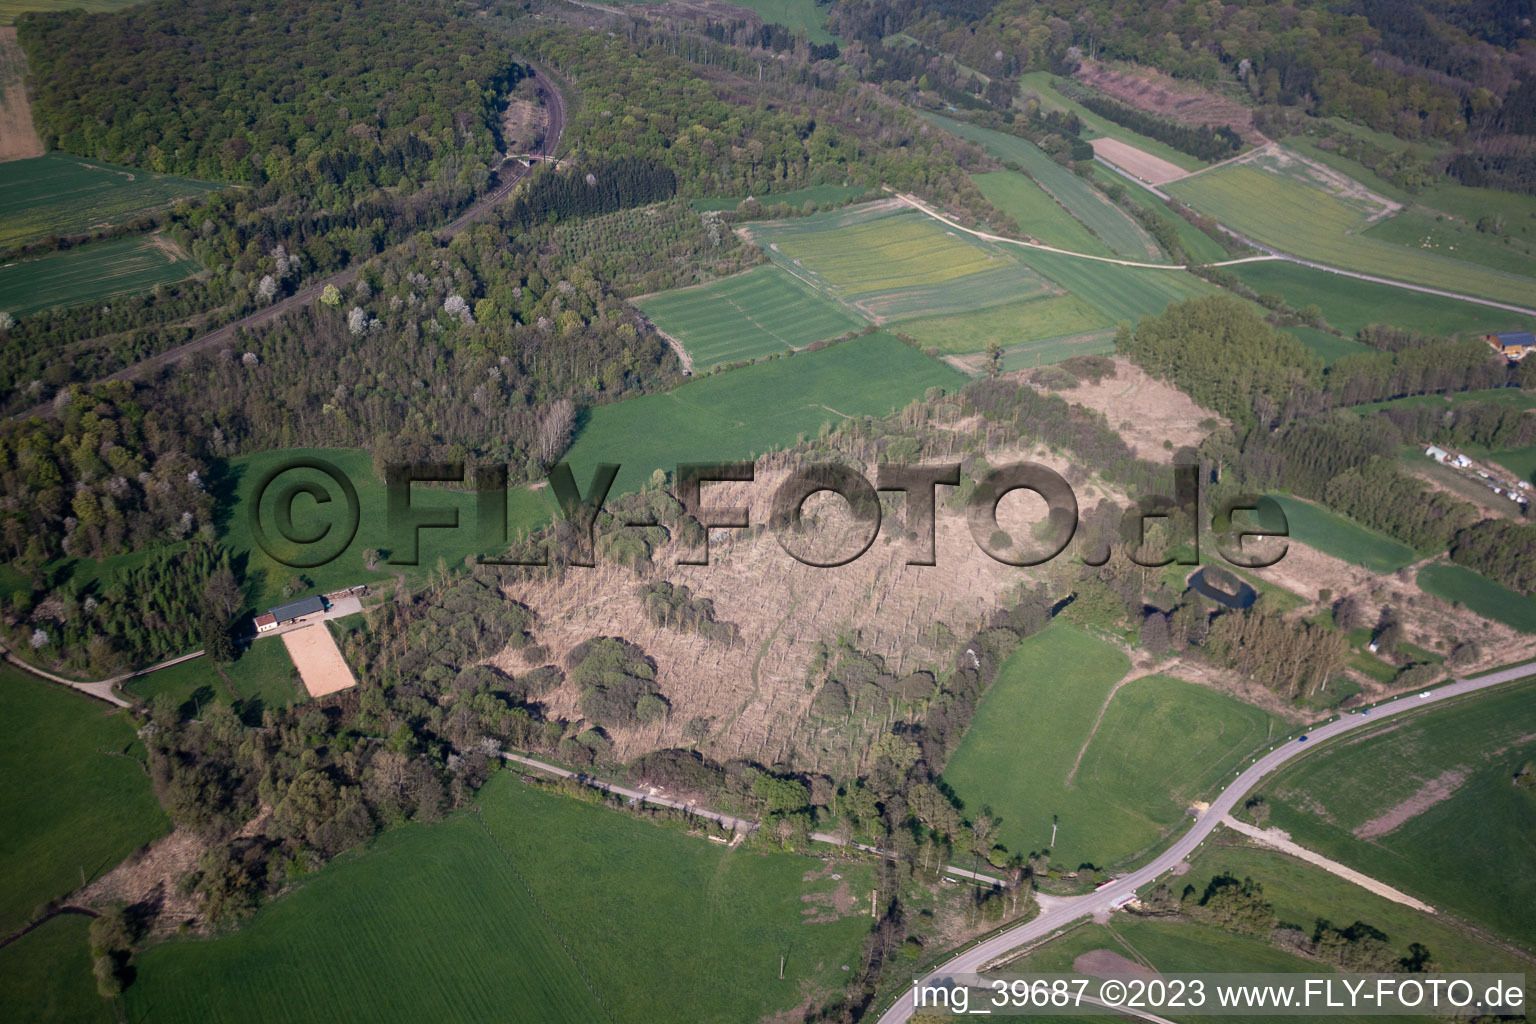 Vue aérienne de Buding dans le département Moselle, France